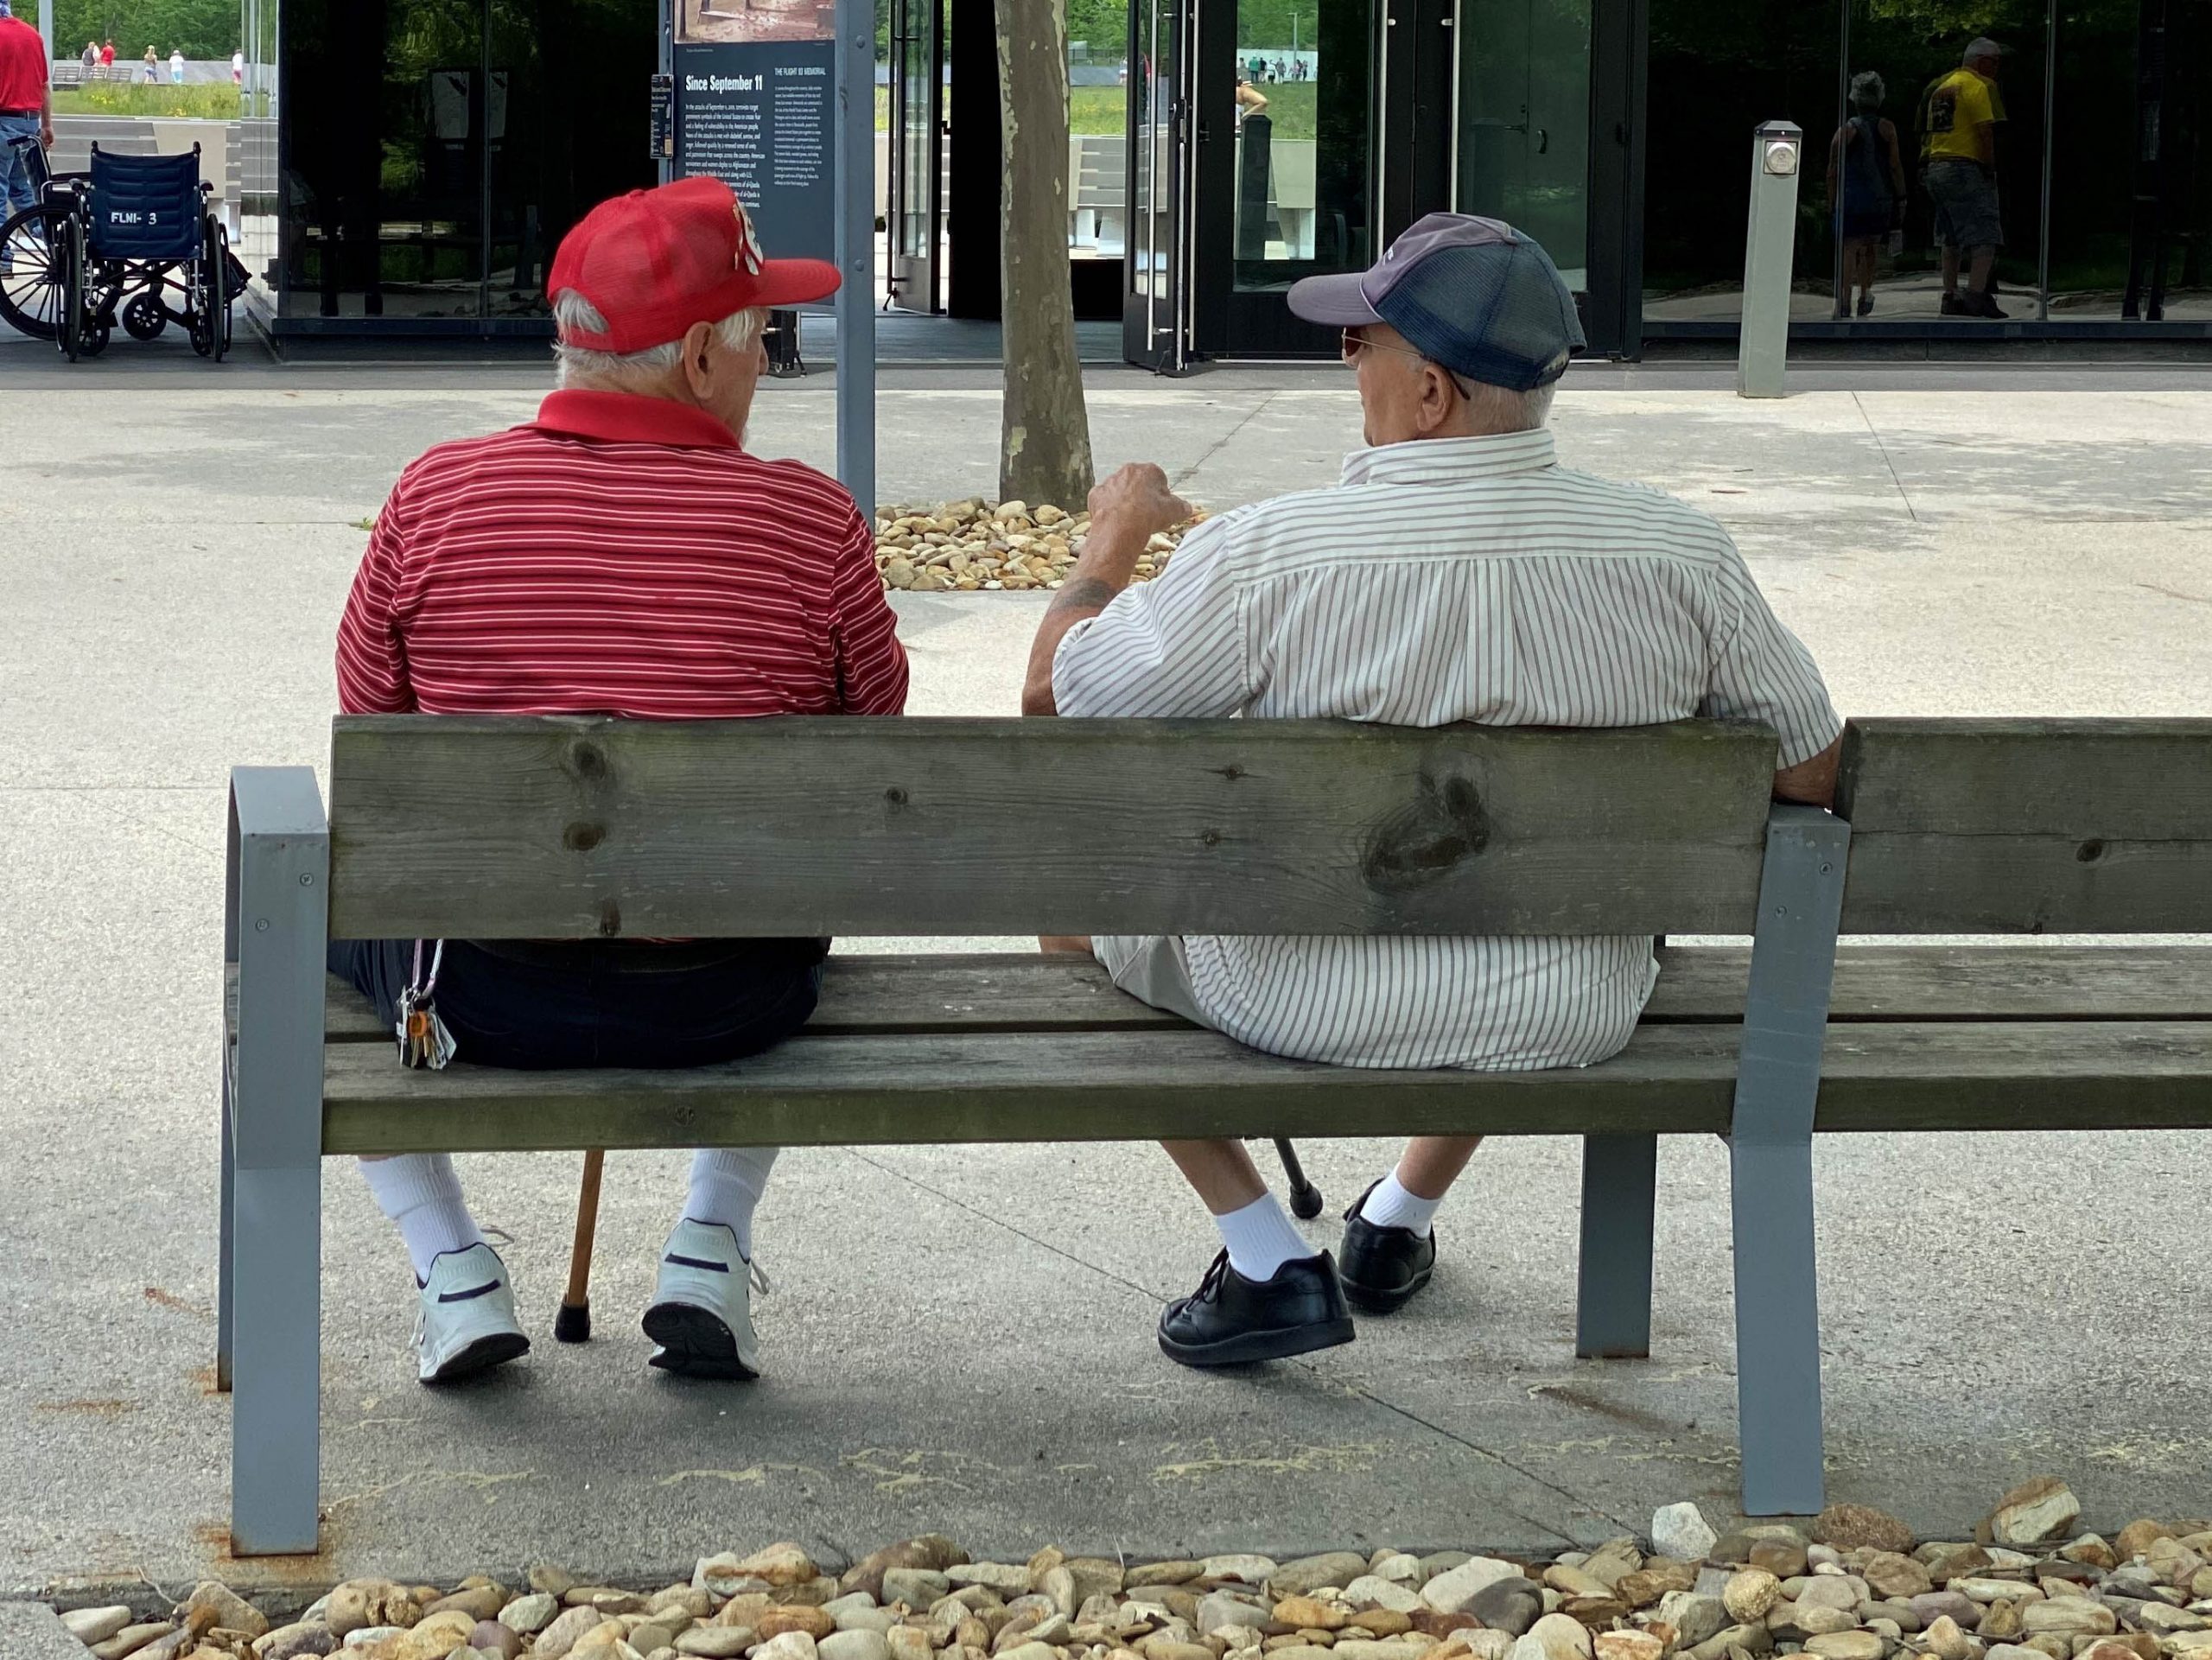 .שני אנשים מבוגרים יושבים על ספסל בחוץ ומשוחחים ביניהם